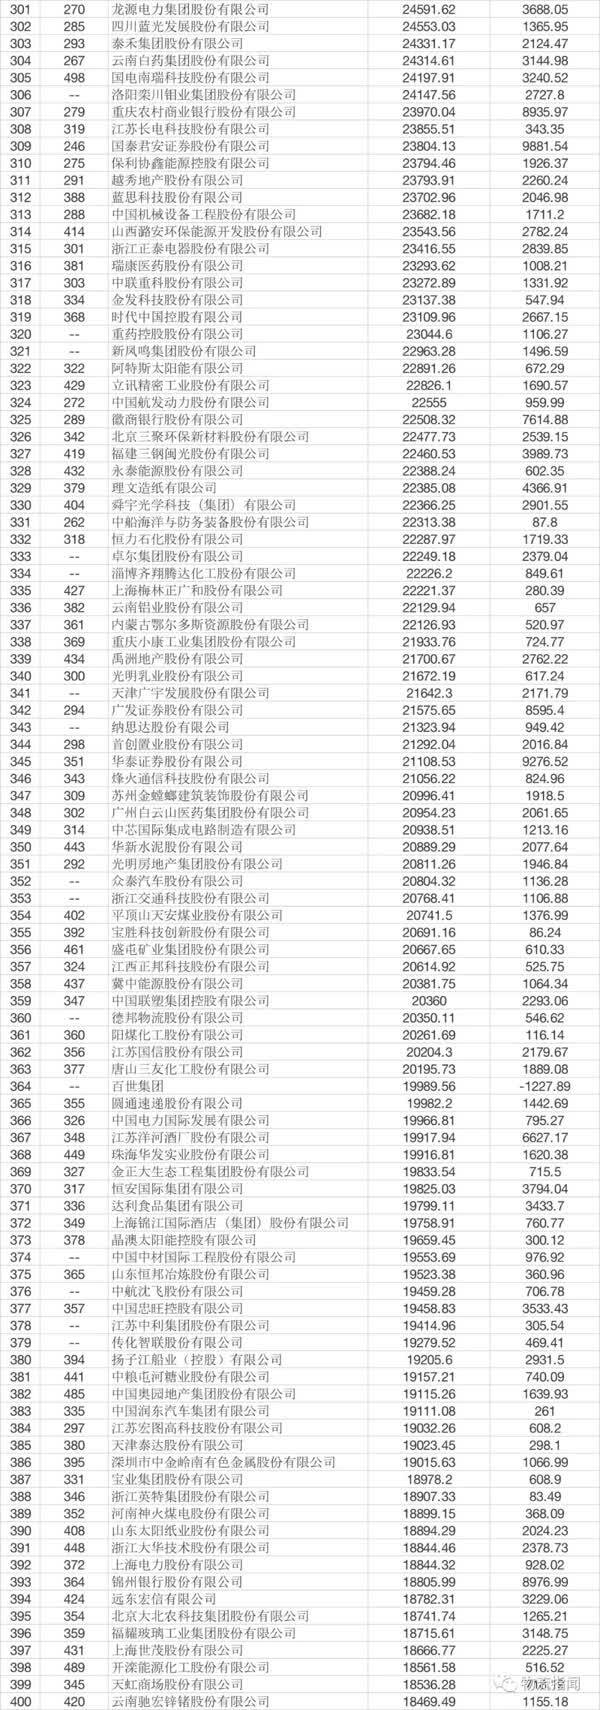 【2018《财富》中国500强:京东第18,腾讯第3